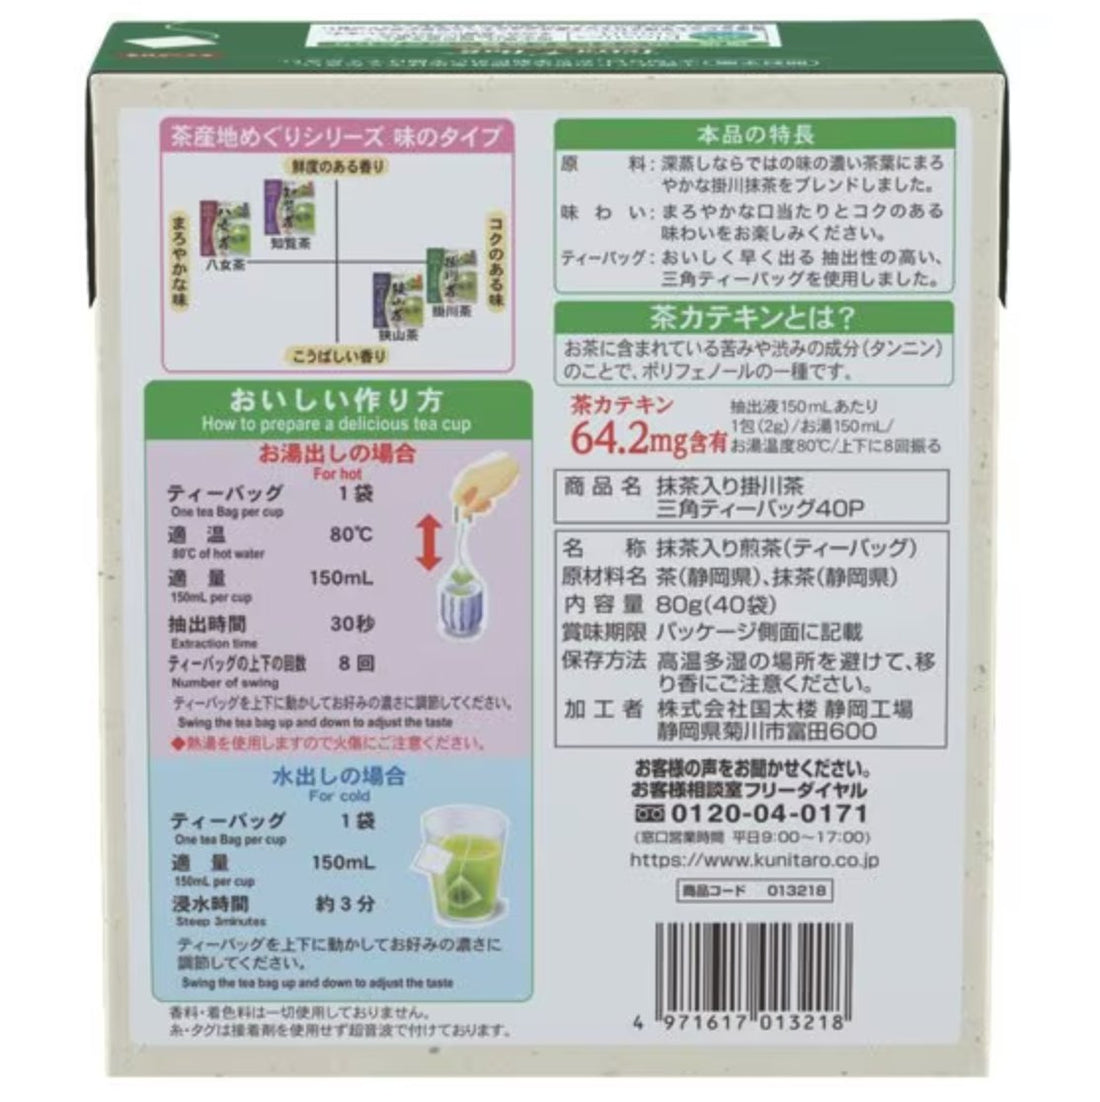 Kunitaro tea with matcha triangular tea bags 40 bags 80g - NihonMura